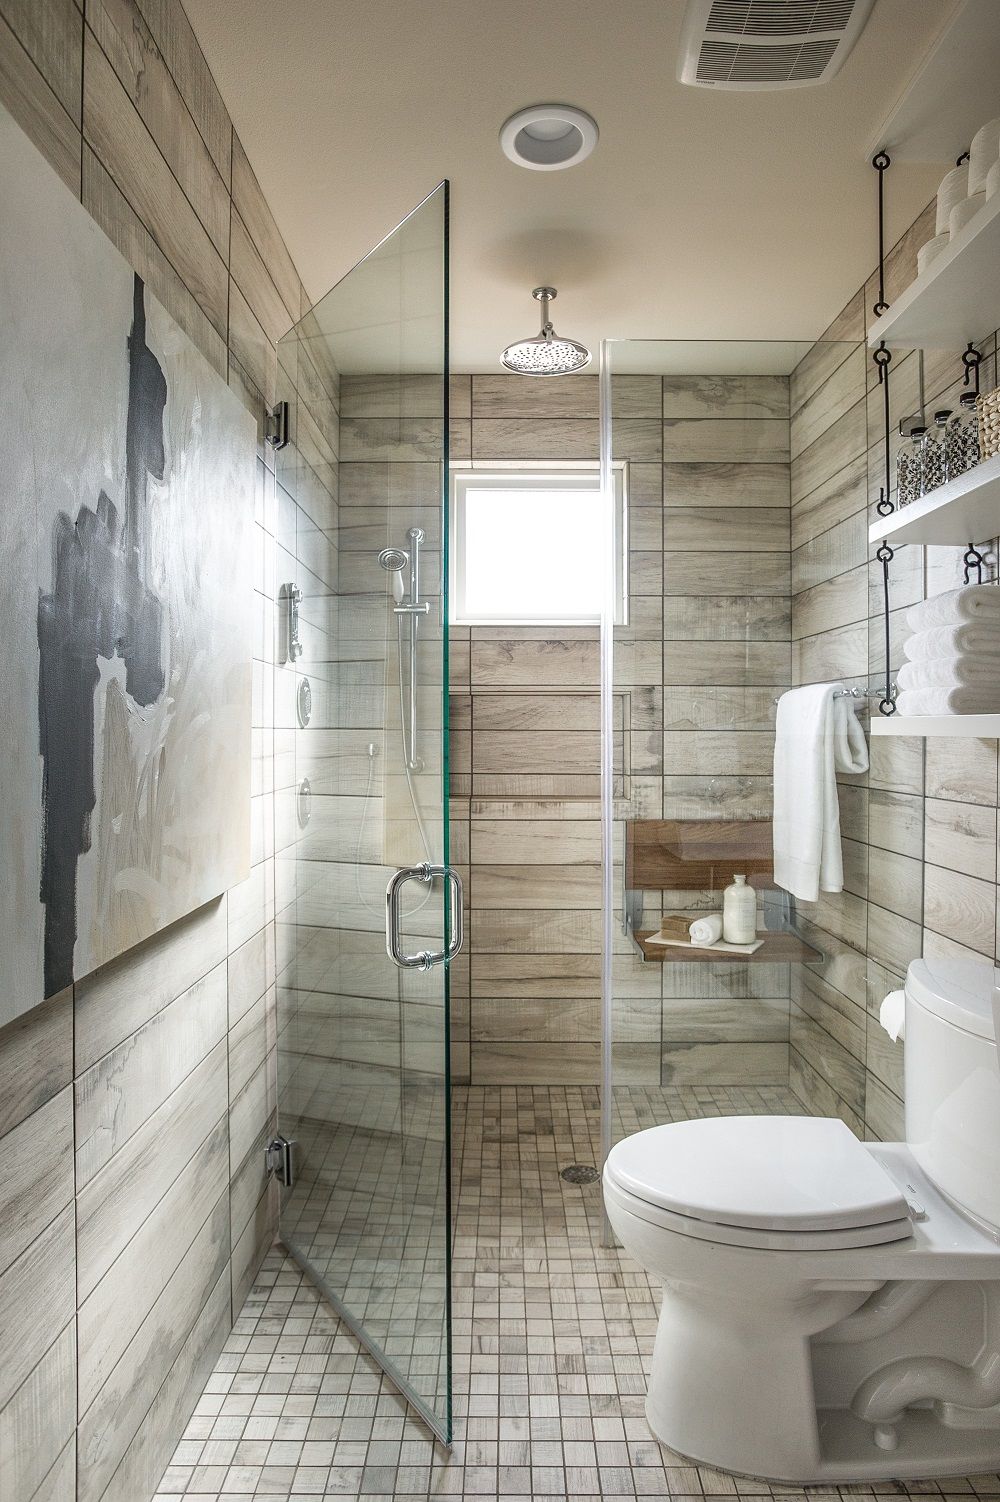 Với thiết kế phòng tắm nhỏ, bạn có thể tạo ra một nơi riêng tư và sạch sẽ bằng cách sử dụng các ý tưởng sáng tạo và đồ nội thất thông minh. Hãy xem hình ảnh để có thêm ý tưởng cho không gian của bạn!